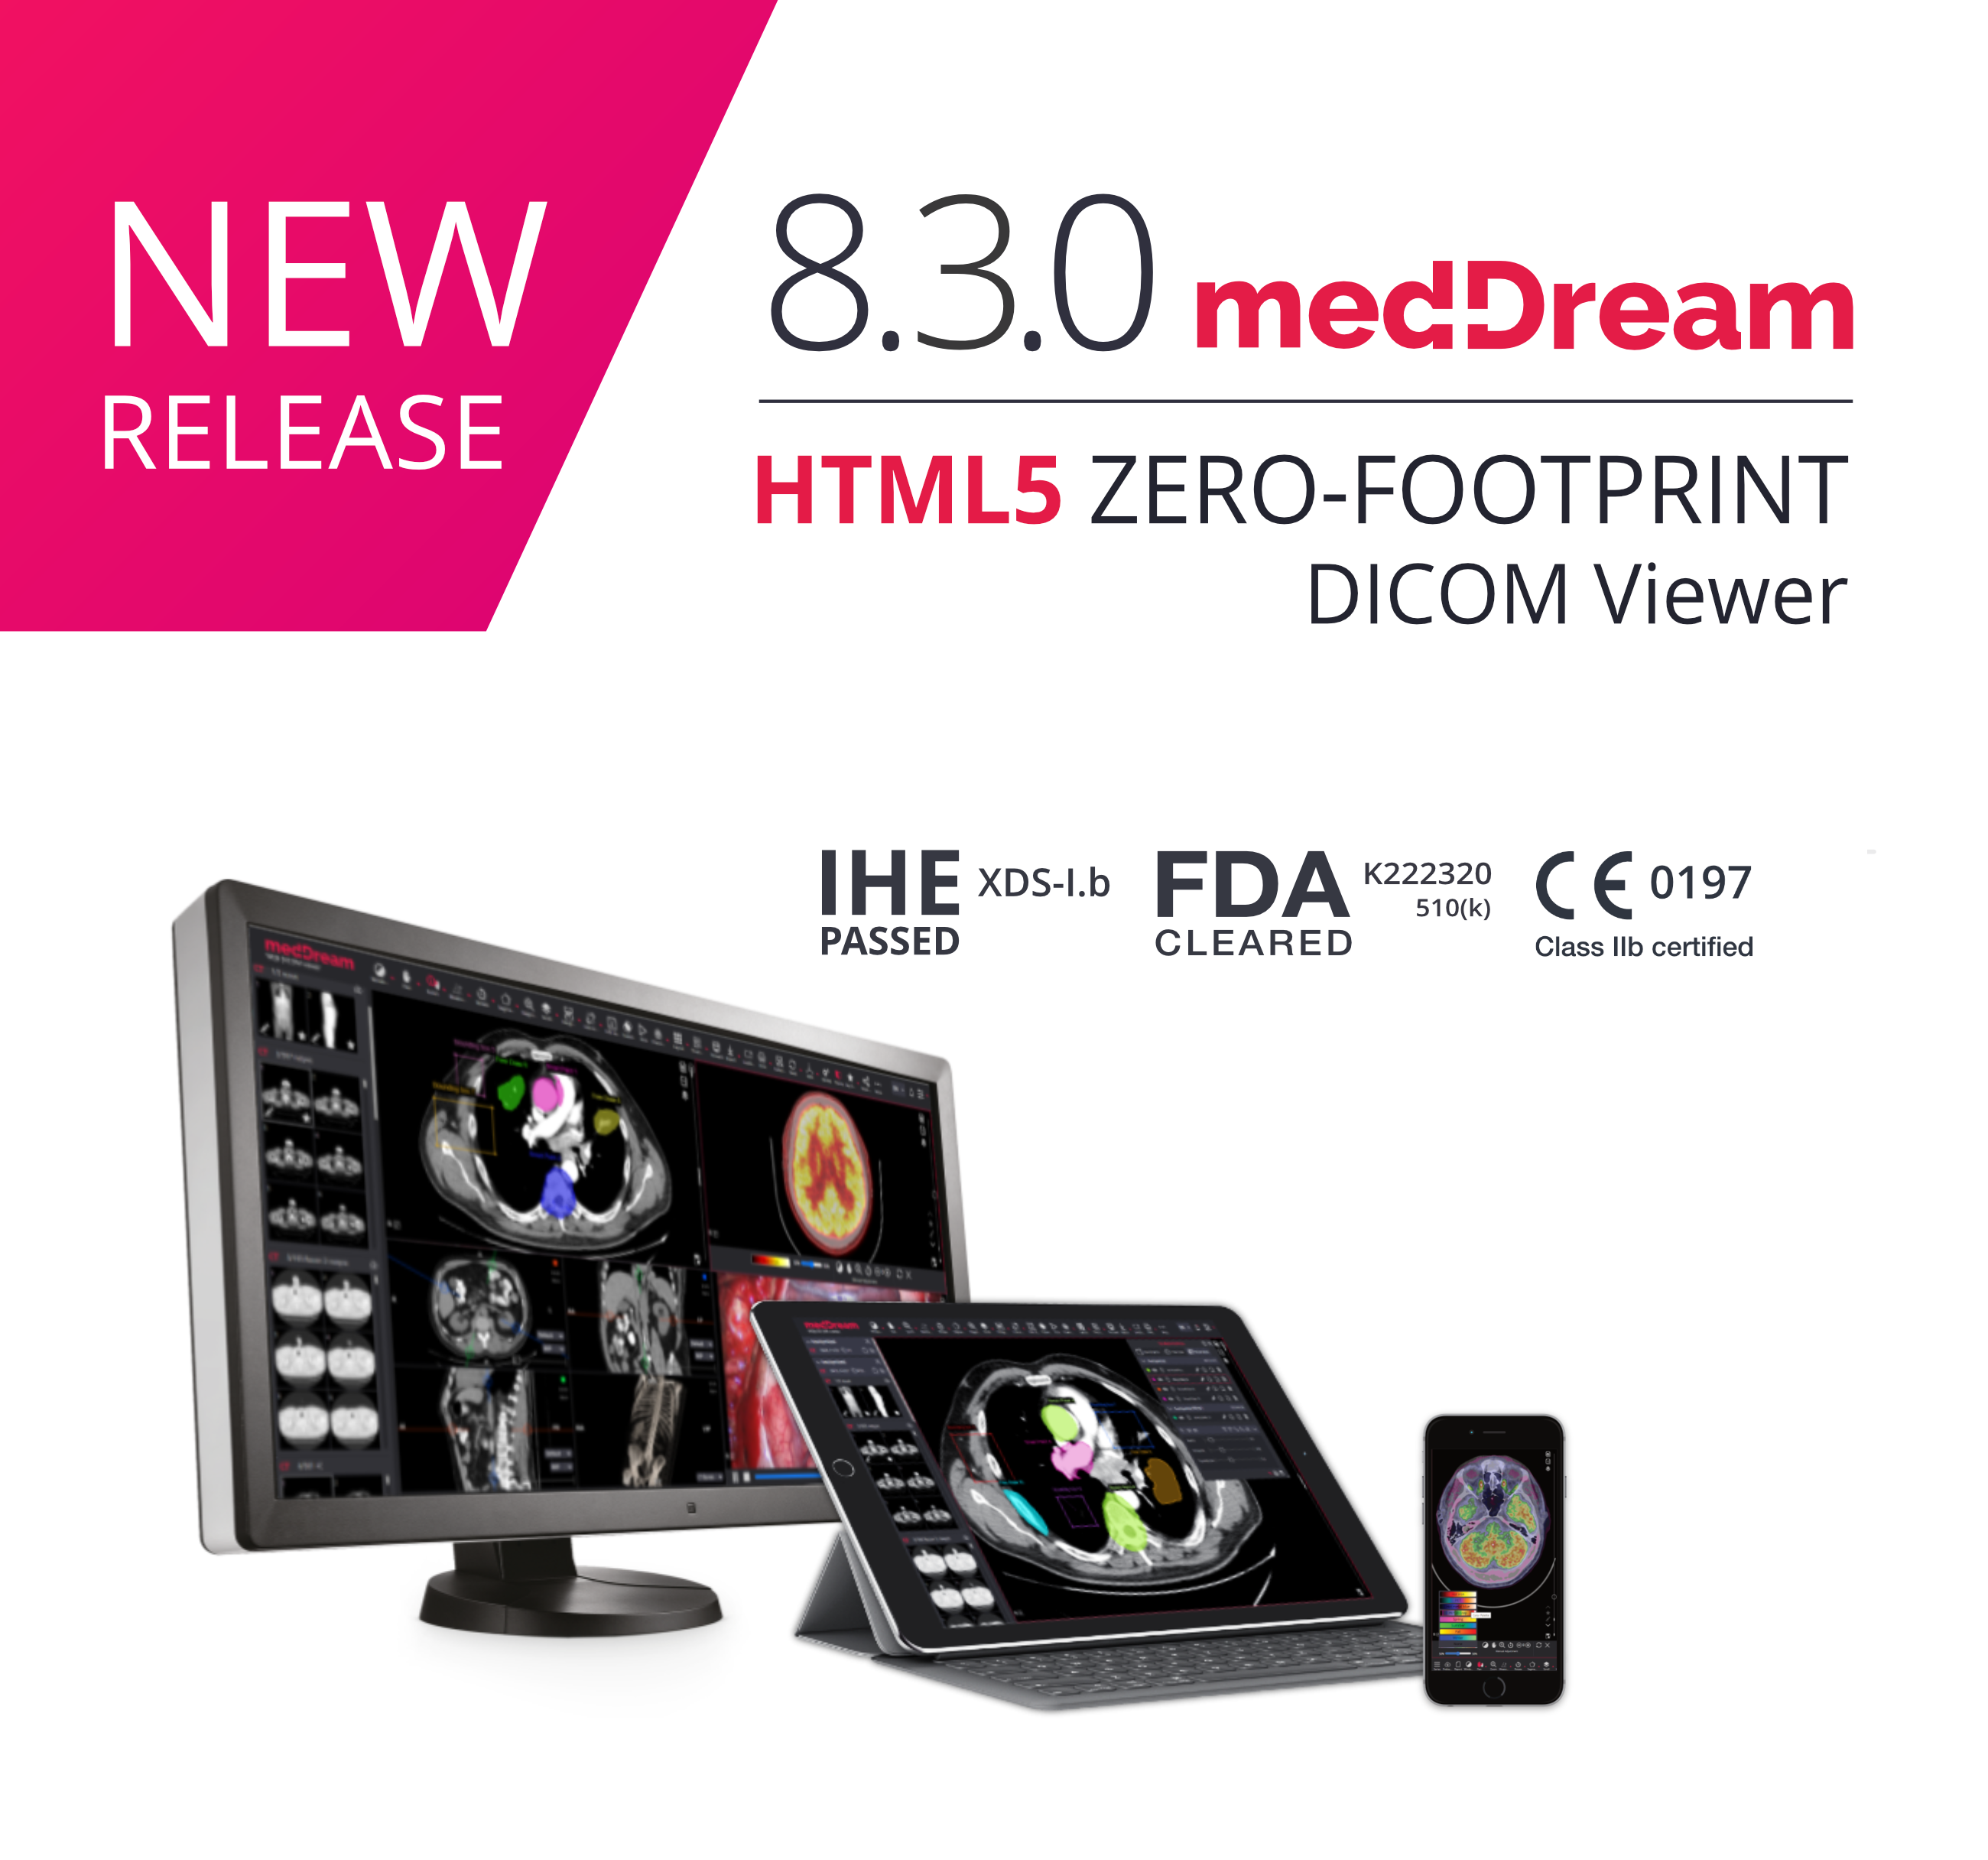 MedDream Dicom Viewer 8.3.0